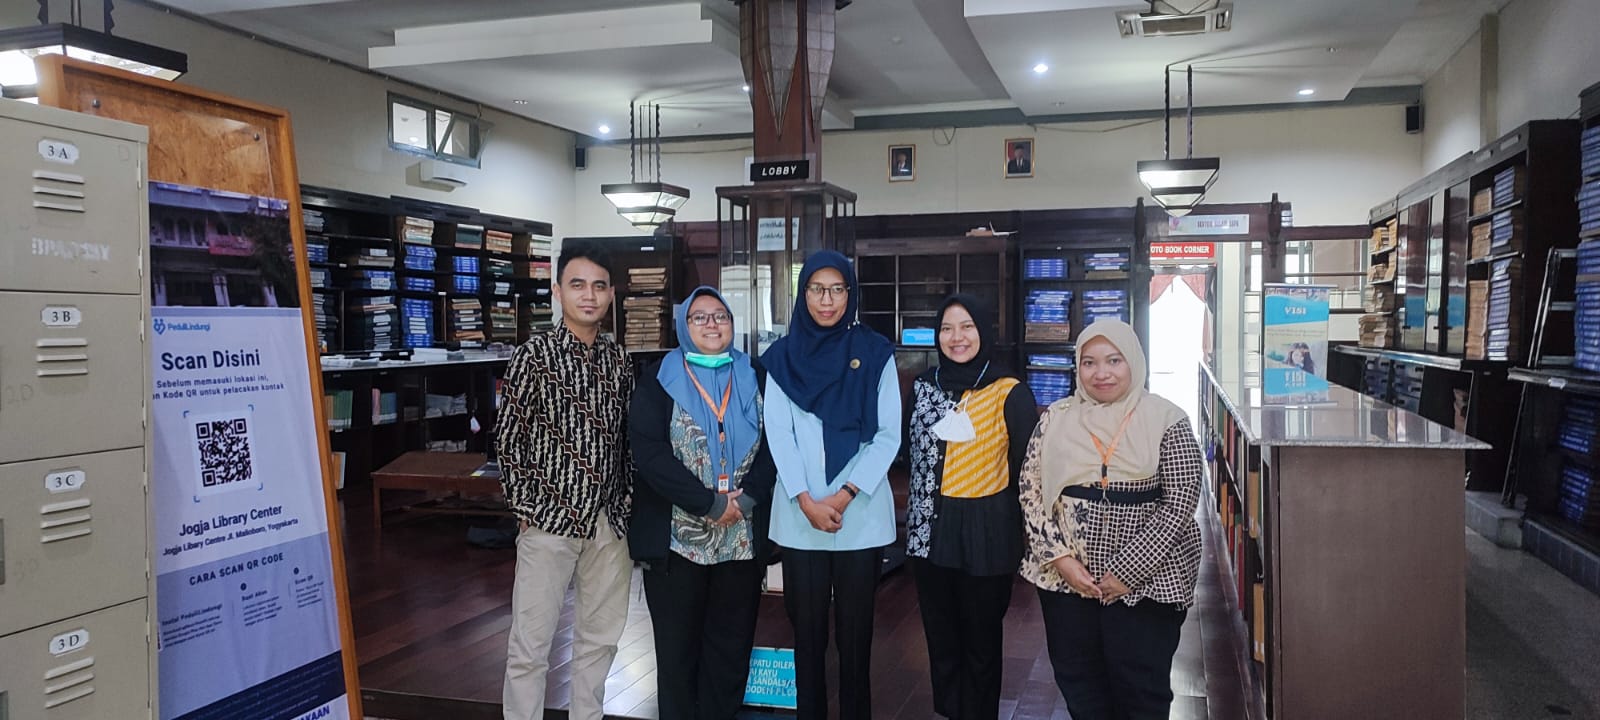 Pengolahan ANRI Melakukan Penelusuran Sumber dan Referensi di Jogjakarta Library Center